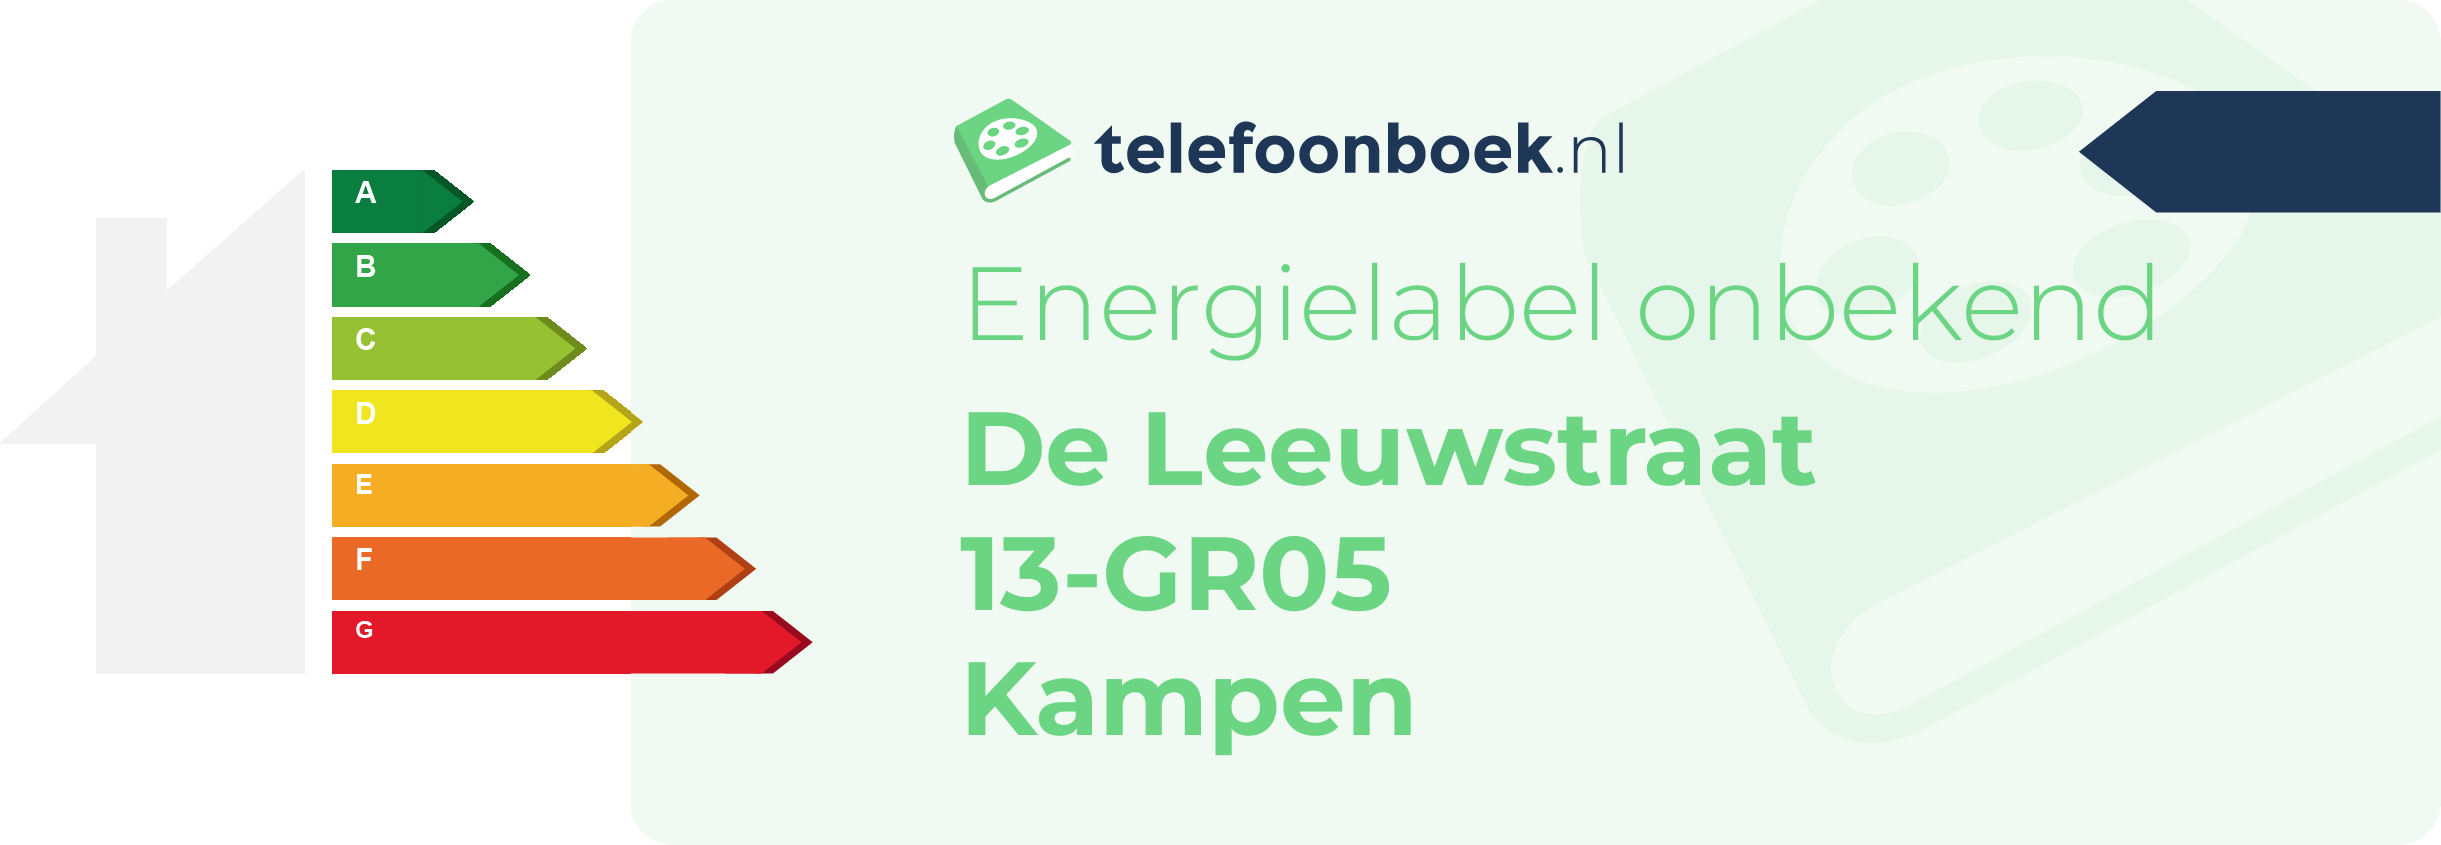 Energielabel De Leeuwstraat 13-GR05 Kampen